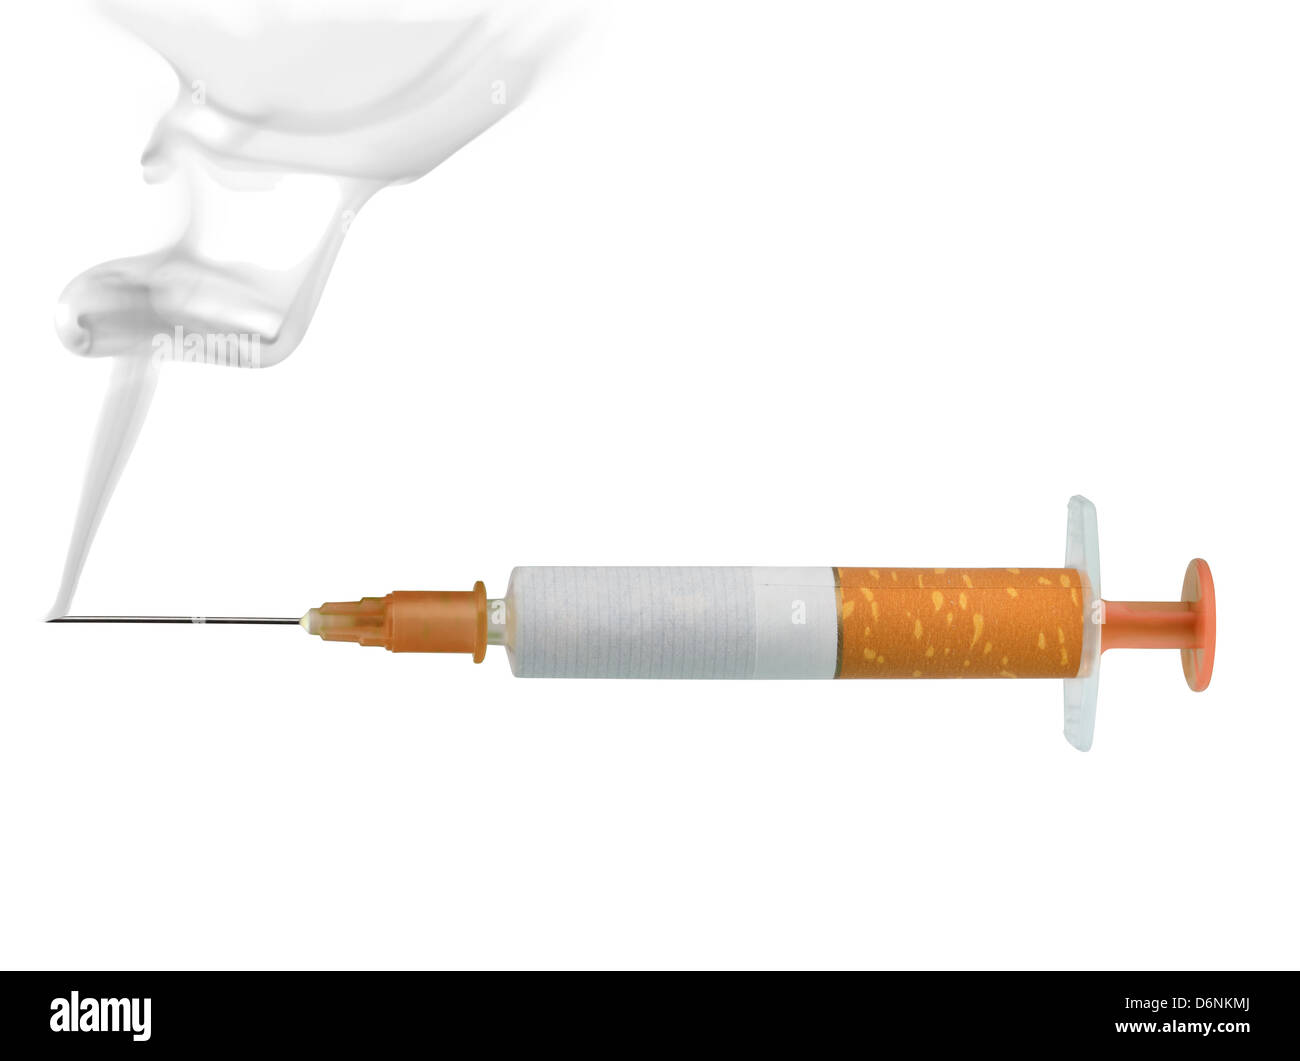 Zigarette-Spritze, das Konzept der Nikotinsucht, isoliert auf weiss Stockfoto